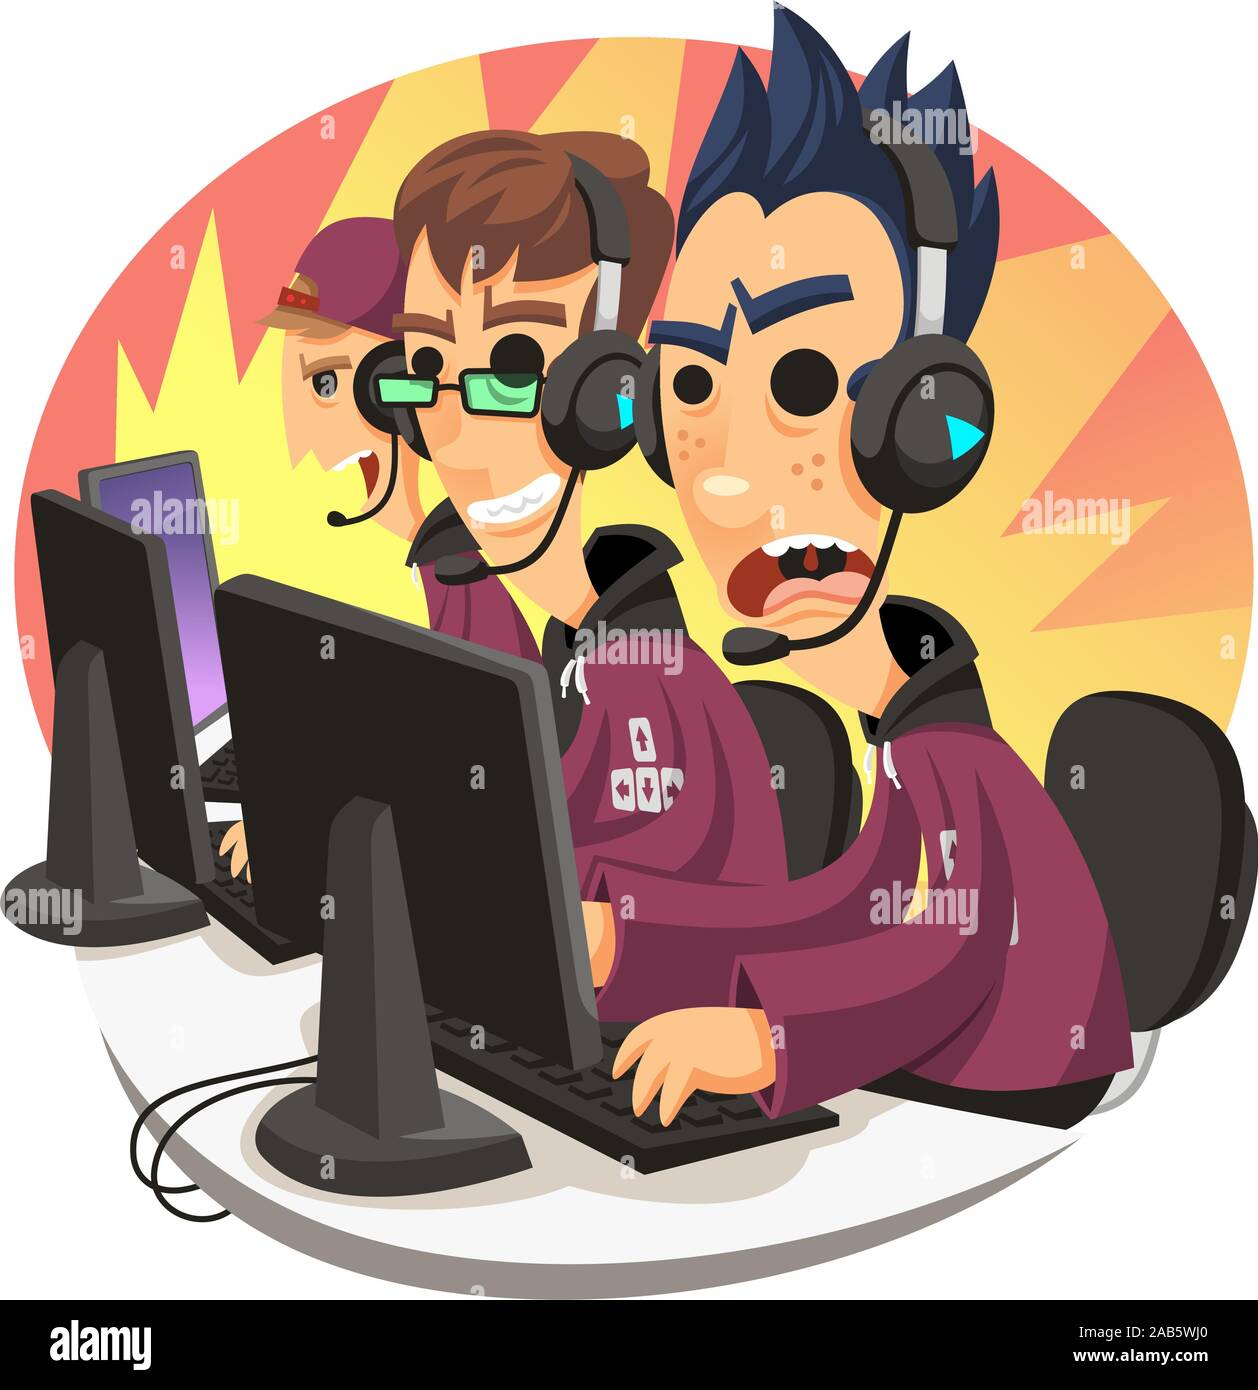 team of gamers cartoon illustration Stock Vector